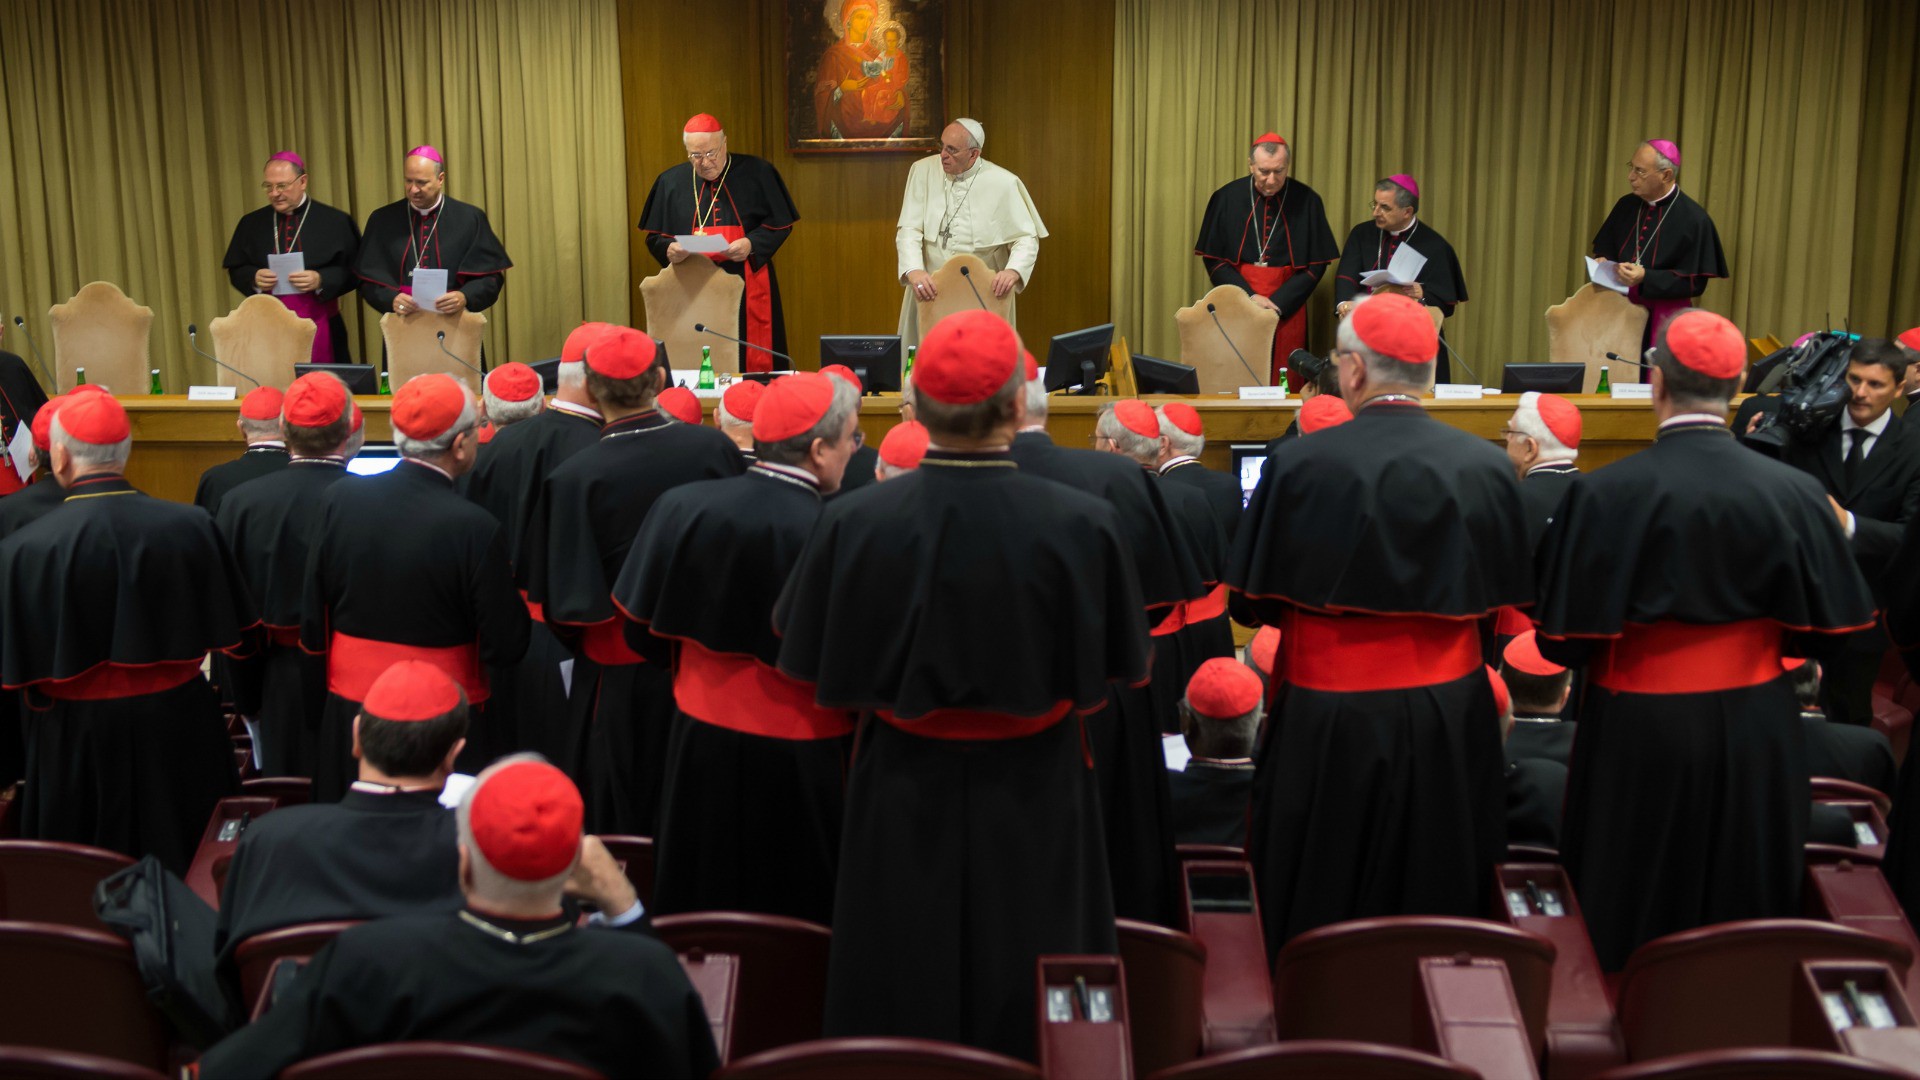 Les participants ont marqué une pause pour célébrer les 50 ans du synode. (Photo: Flickr/Mazur/catholicnews.org.uk/CC BY-NC-SA 2.0)